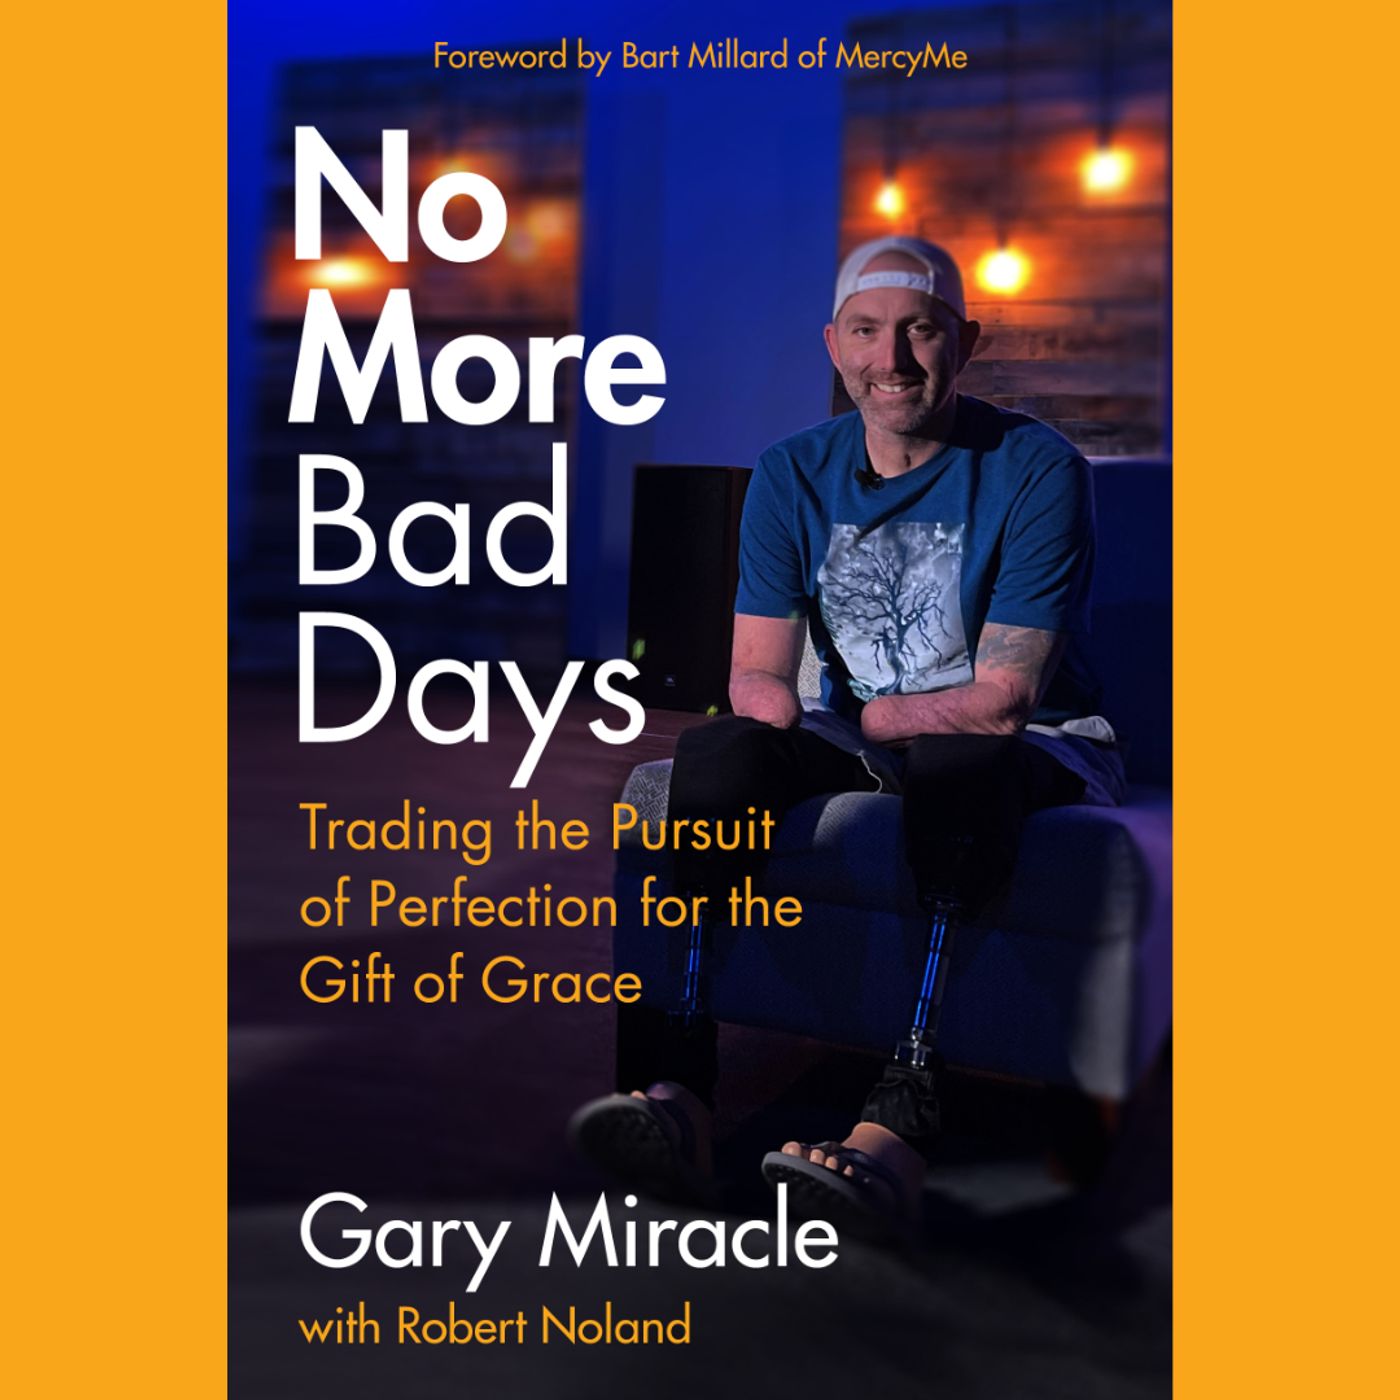 Gary Miracle - No More Bad Days